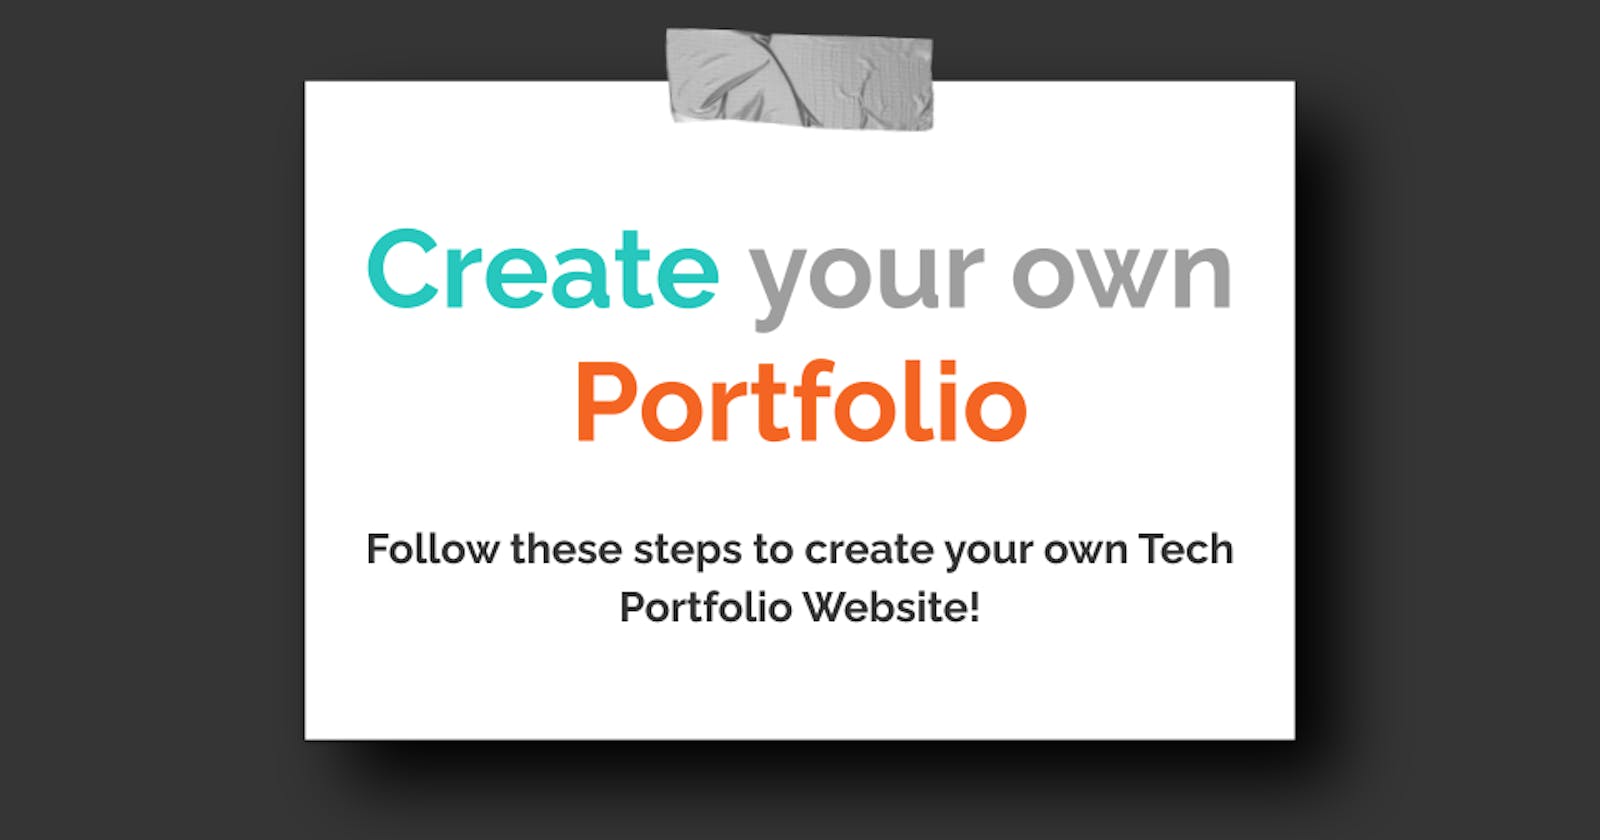 Do you know the process of creating a Portfolio website?